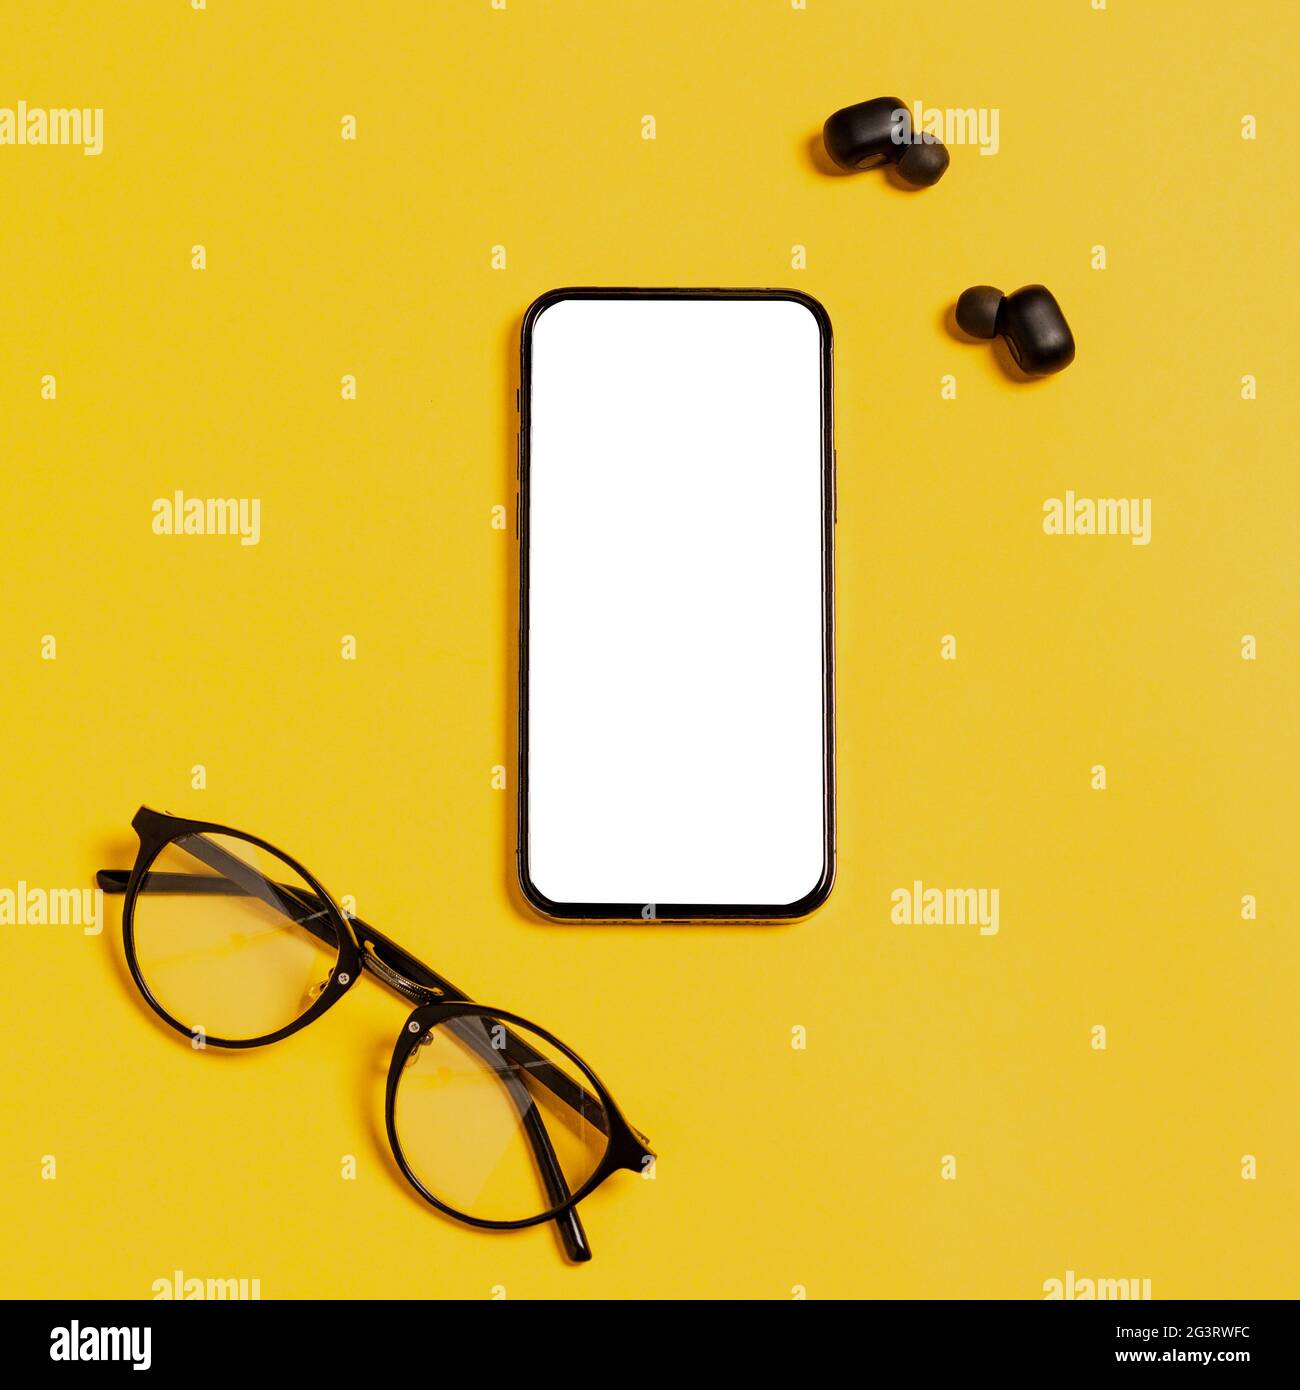 Mockup per smartphone con display bianco vuoto per annunci di applicazioni mobili moderni. Cuffie wireless, occhiali, sfondo giallo. App per social media Foto Stock